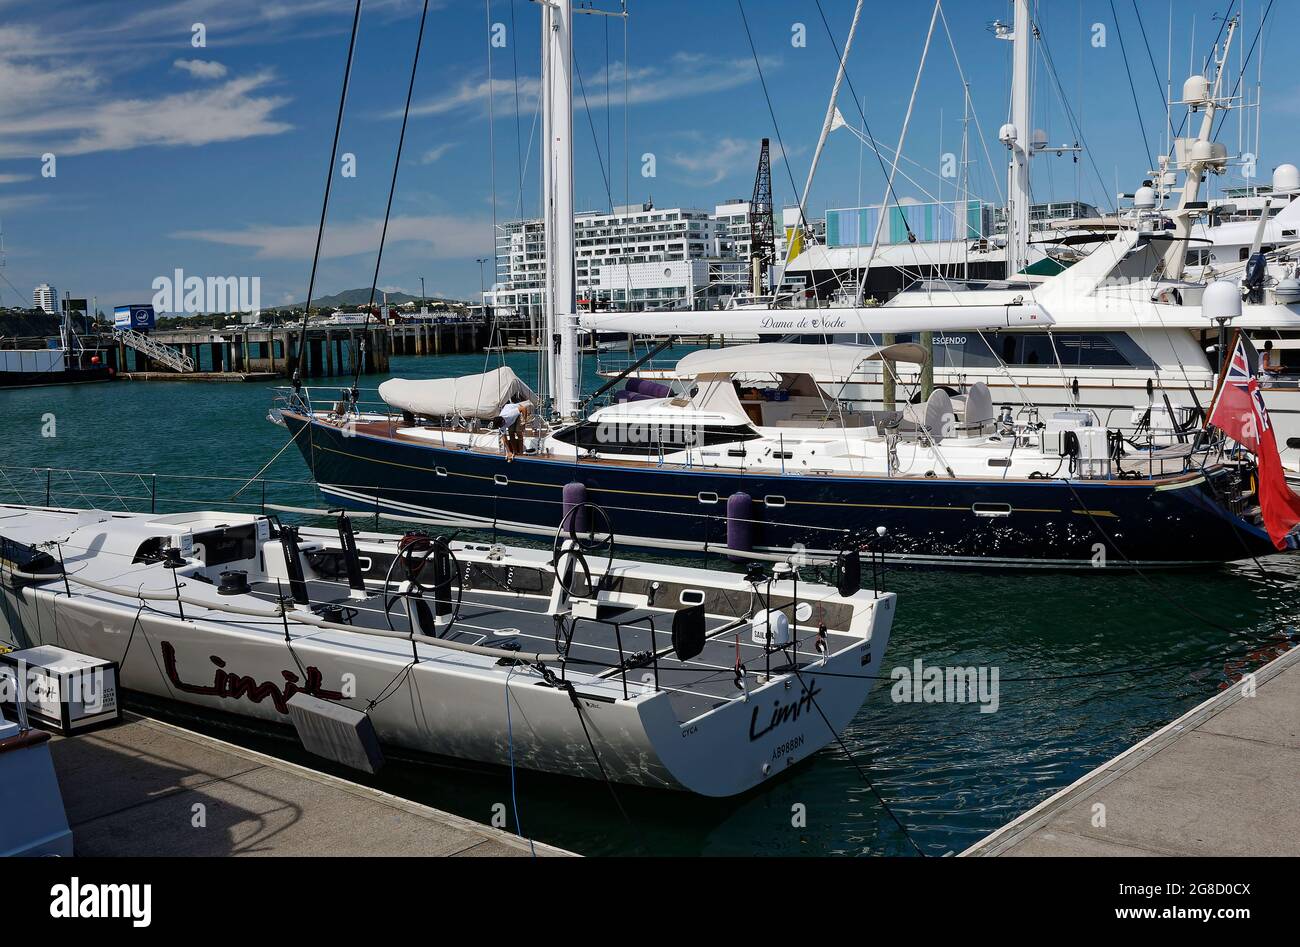 St. Mary's Bay, yacht; sviluppo urbano, edifici, porto, marina, barche ormeggiate, paesaggio urbano, scena marina, molo, Auckland; Nuova Zelanda Foto Stock